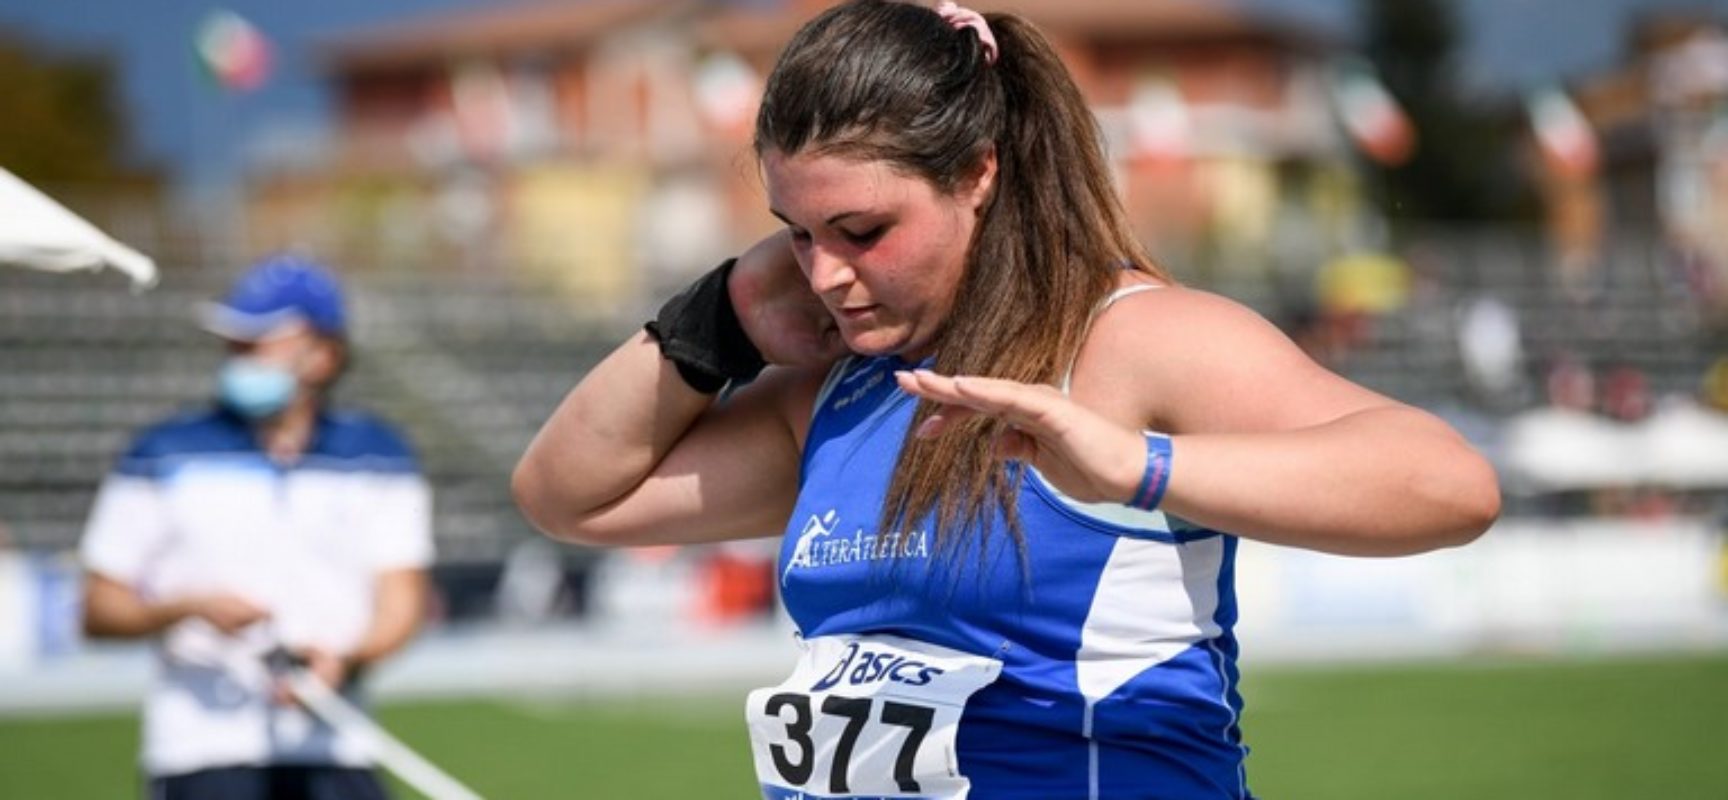 Atletica leggera, record regionale per Anna Musci nel getto del peso